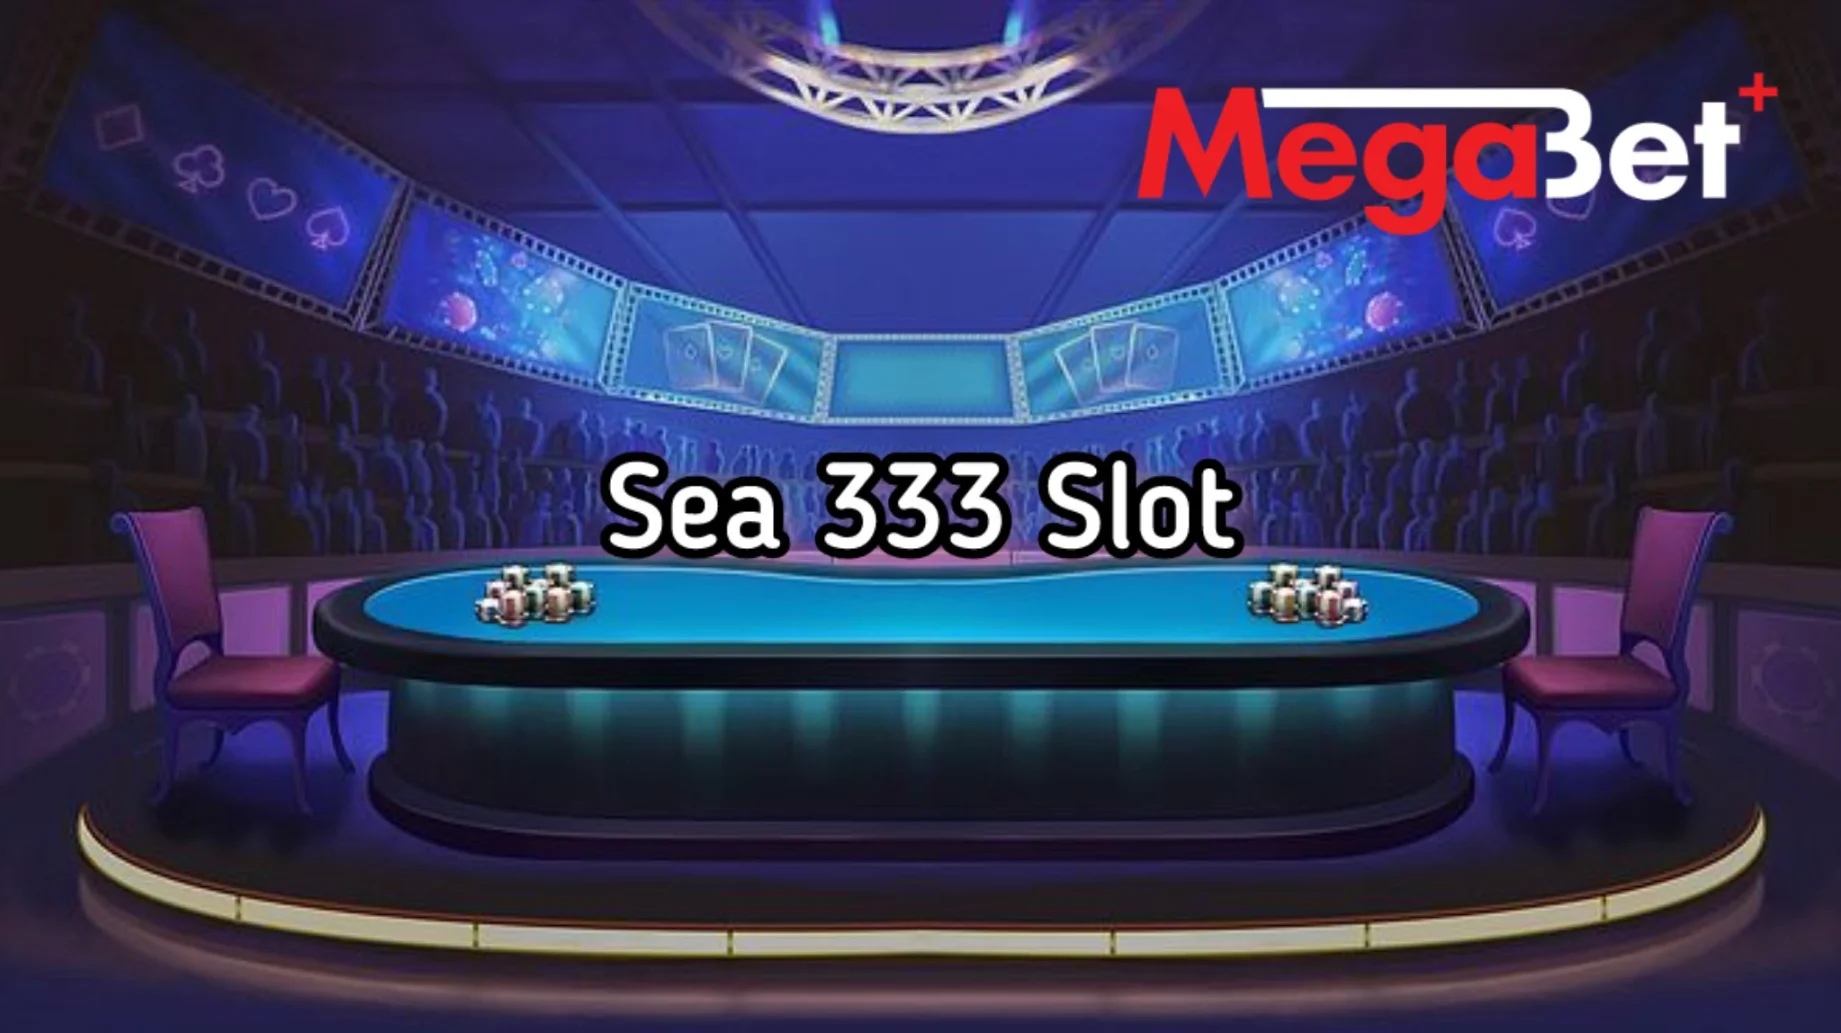 เข้าร่วมสนุกกับเกมสล็อต sea 333 slot และชนะรางวัลใหญ่ทุกวัน!